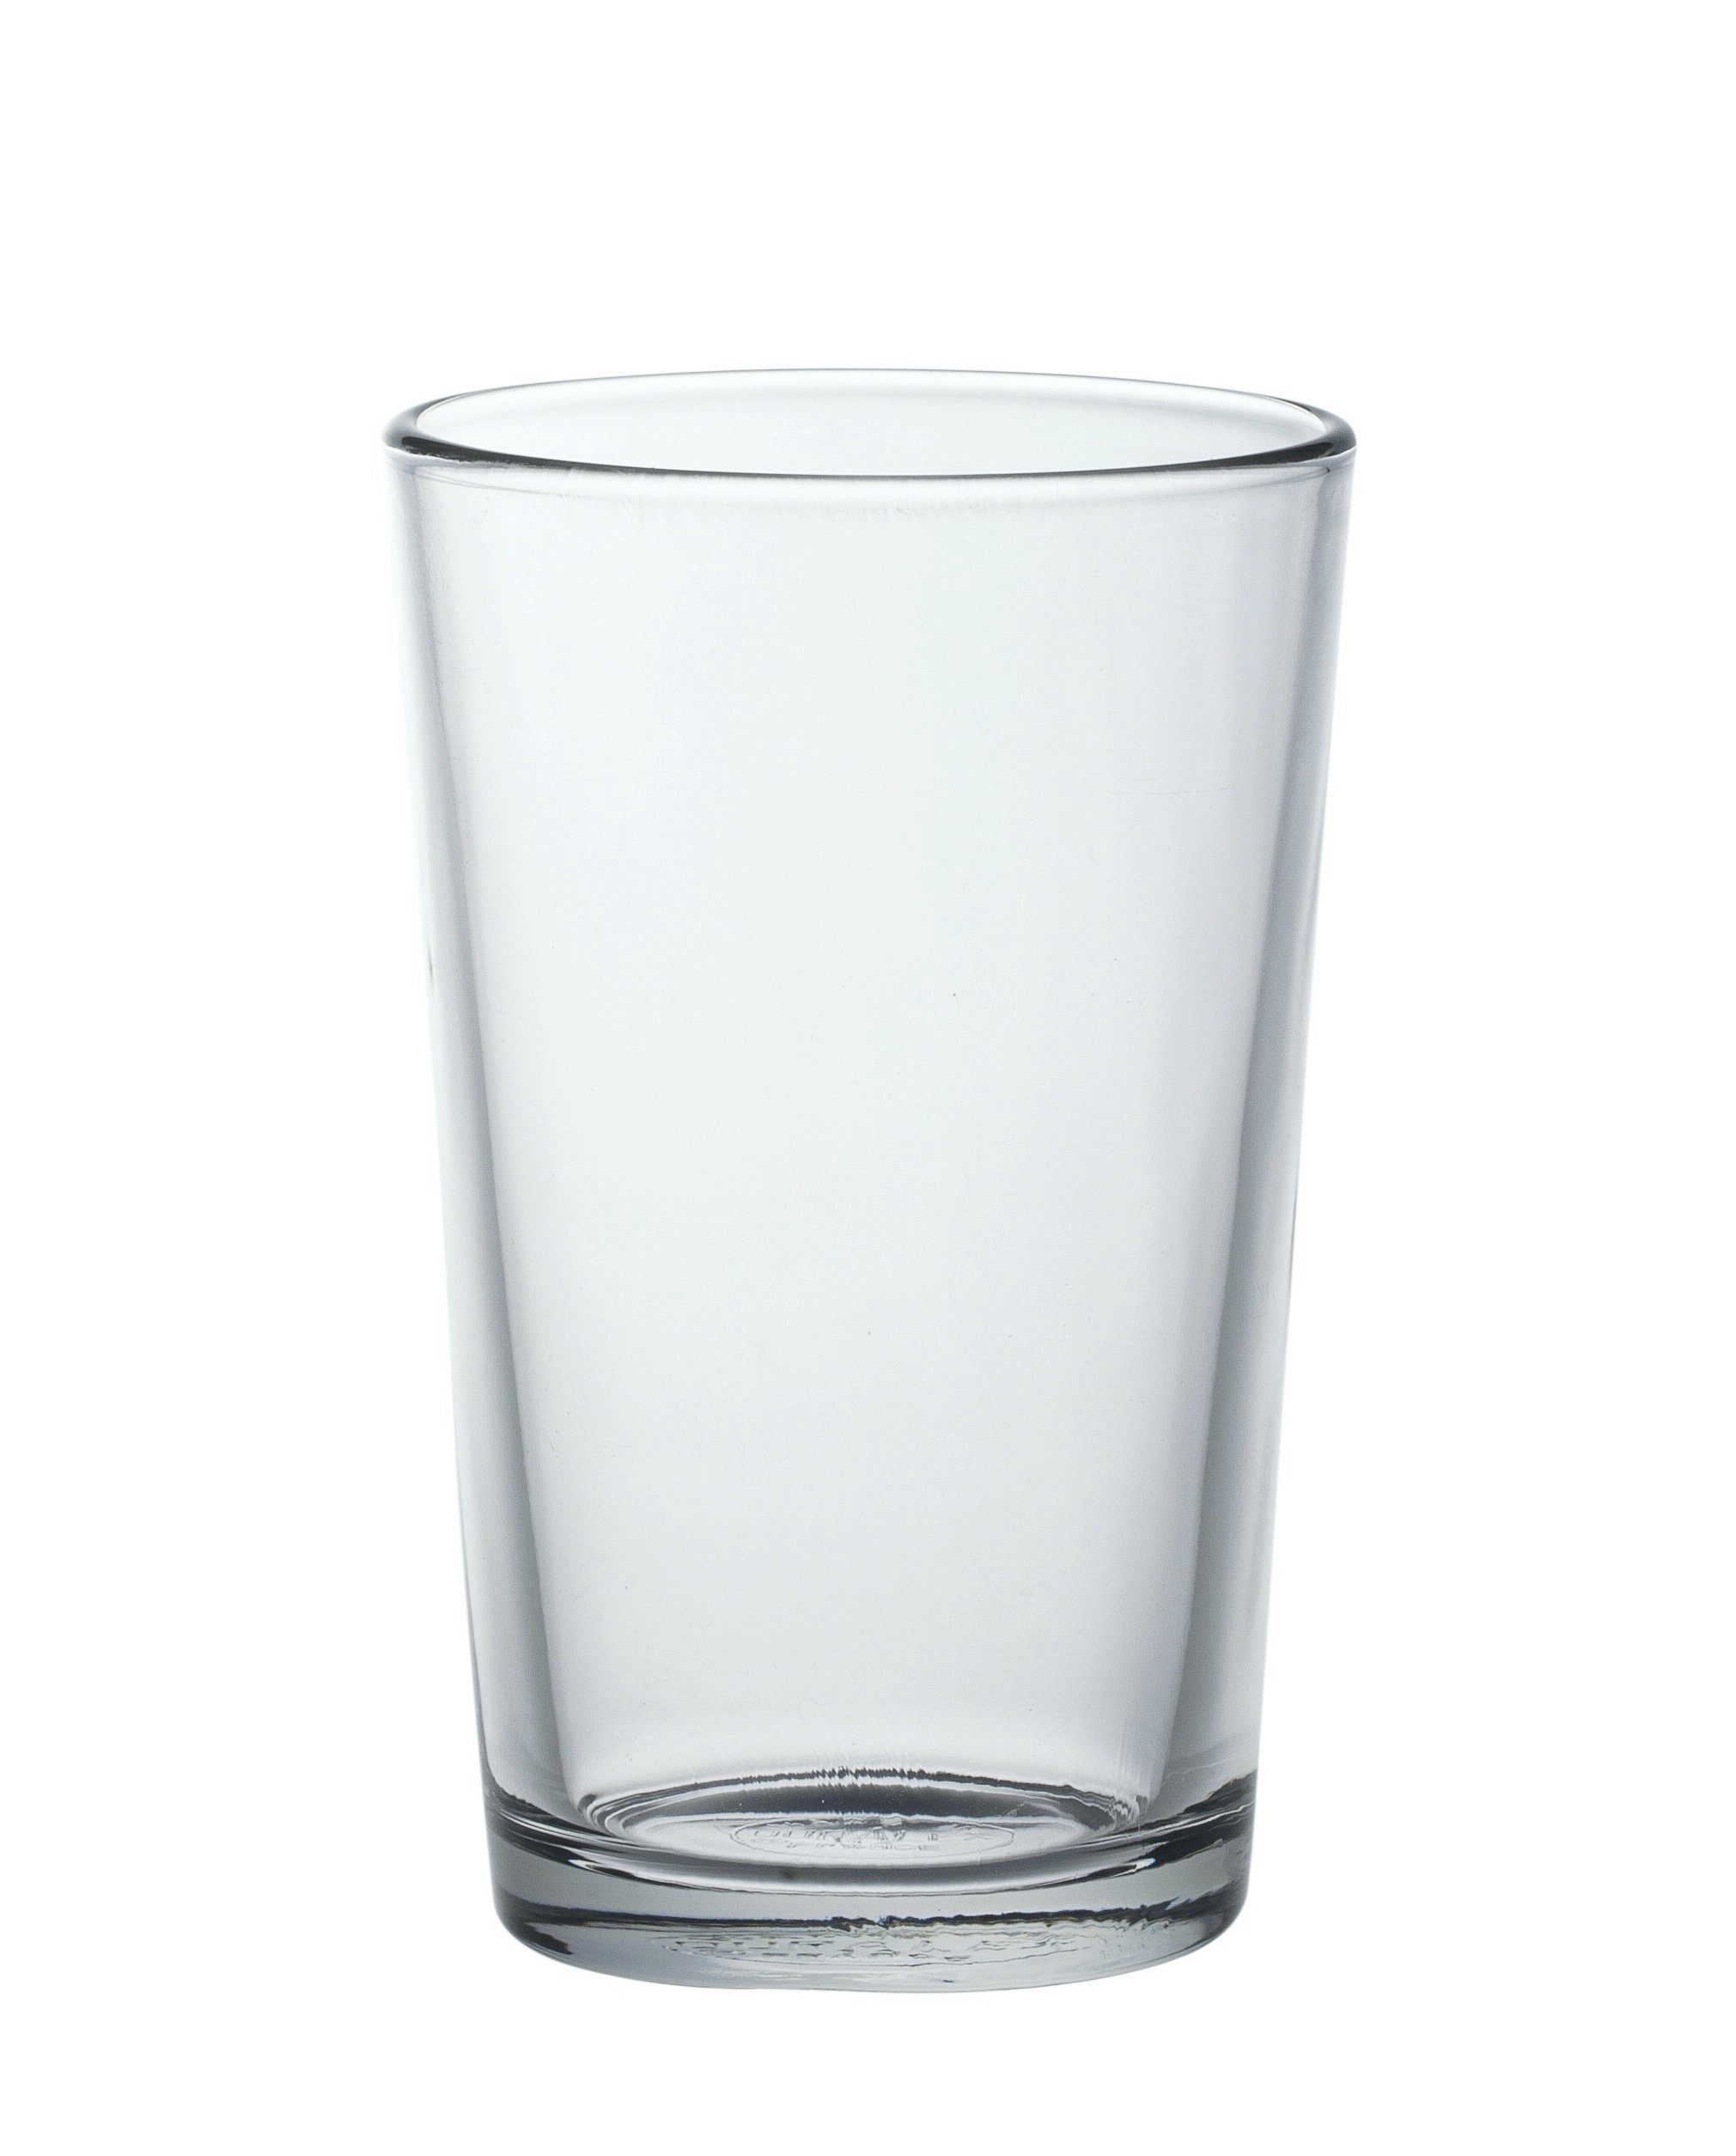 Duralex Tumbler-Glas Chope Unie, Glas gehärtet, Tumbler Trinkglas 200ml Glas gehärtet transparent 6 Stück ohne Füllstrich